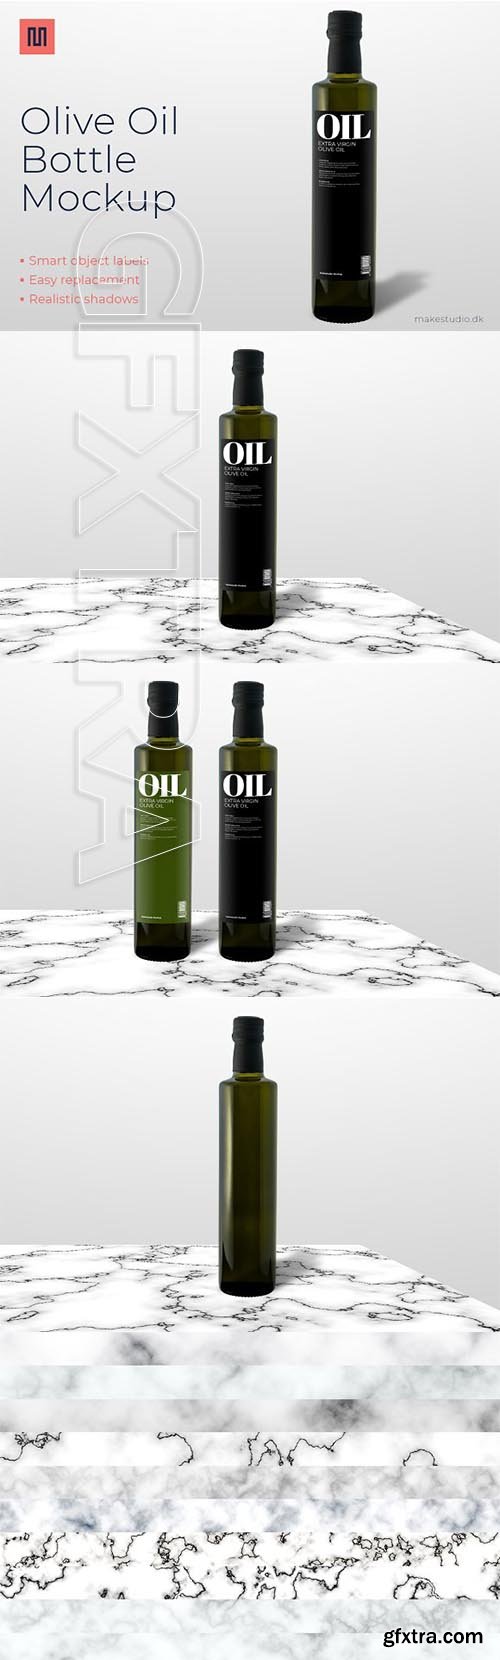 CreativeMarket - Olive oil - Bottle mockup 2796269